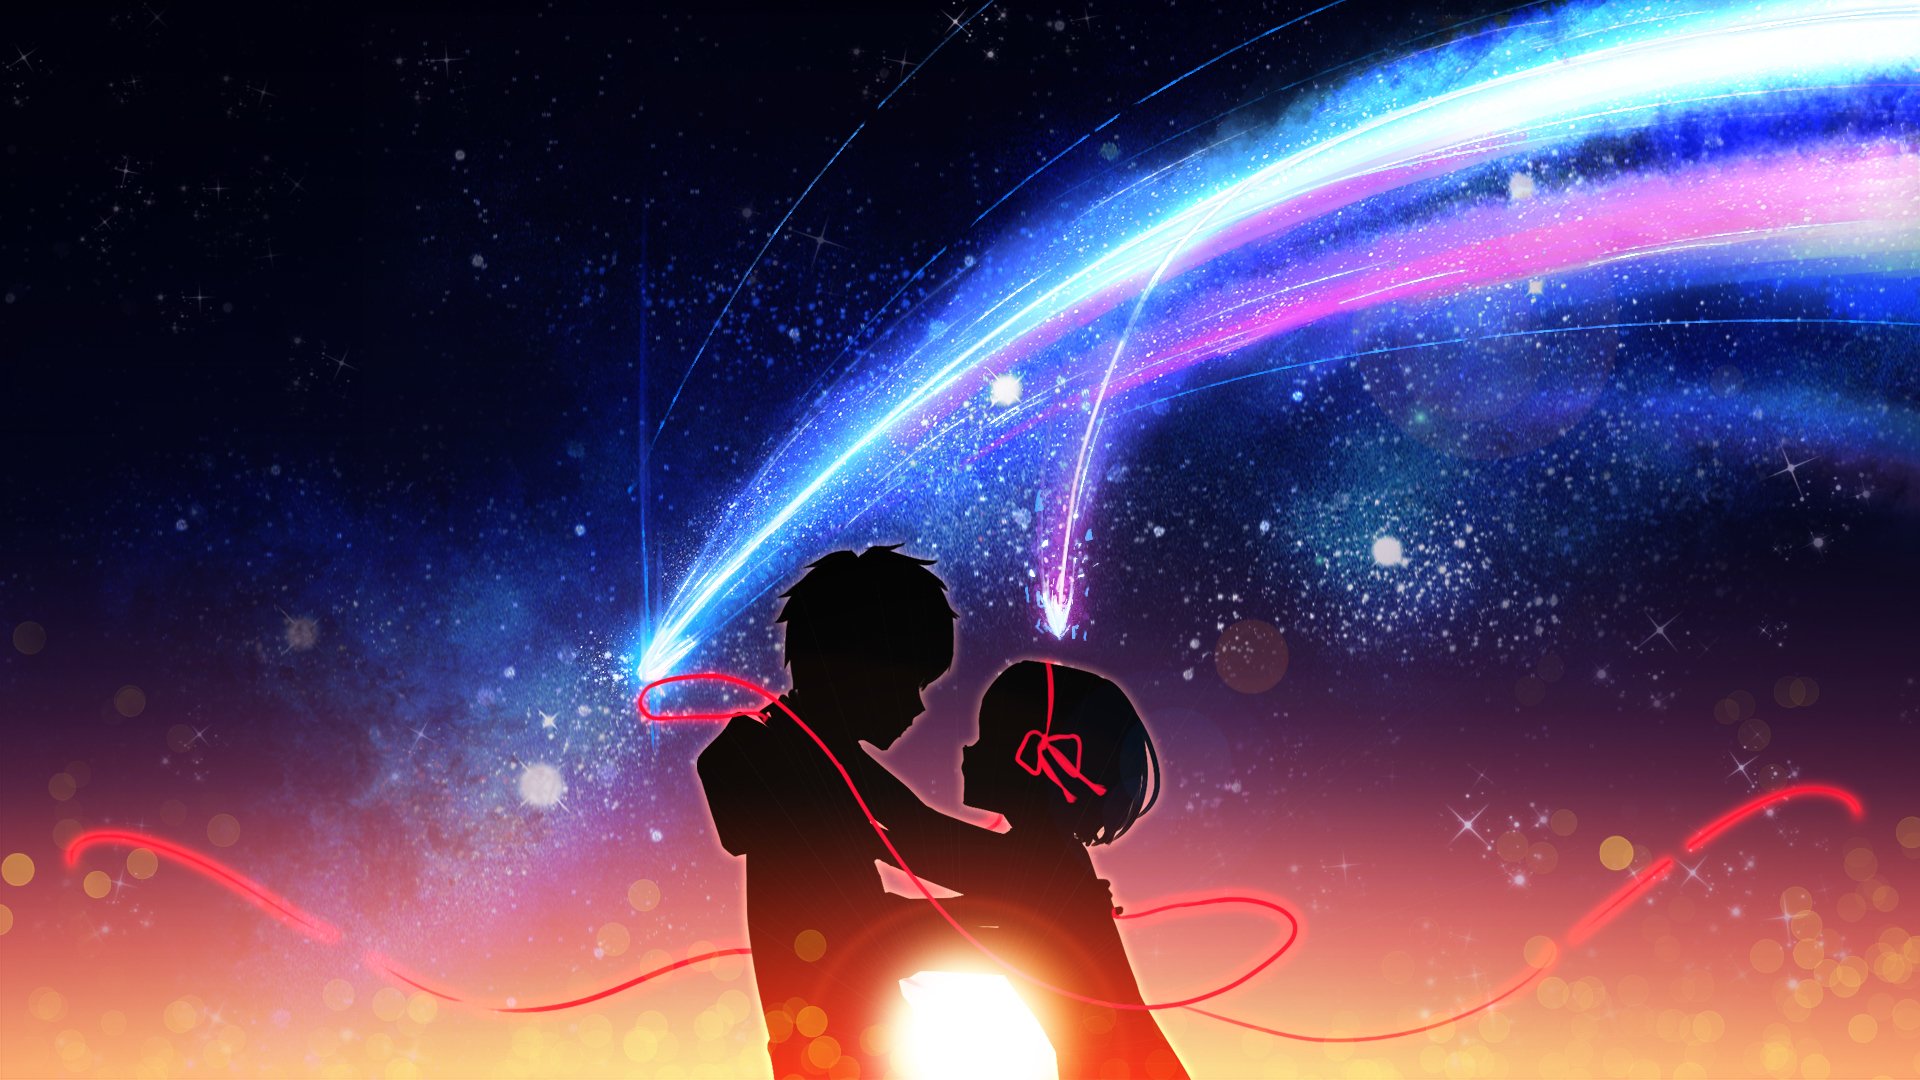 dein name anime wallpaper,himmel,licht,platz,atmosphäre,astronomisches objekt